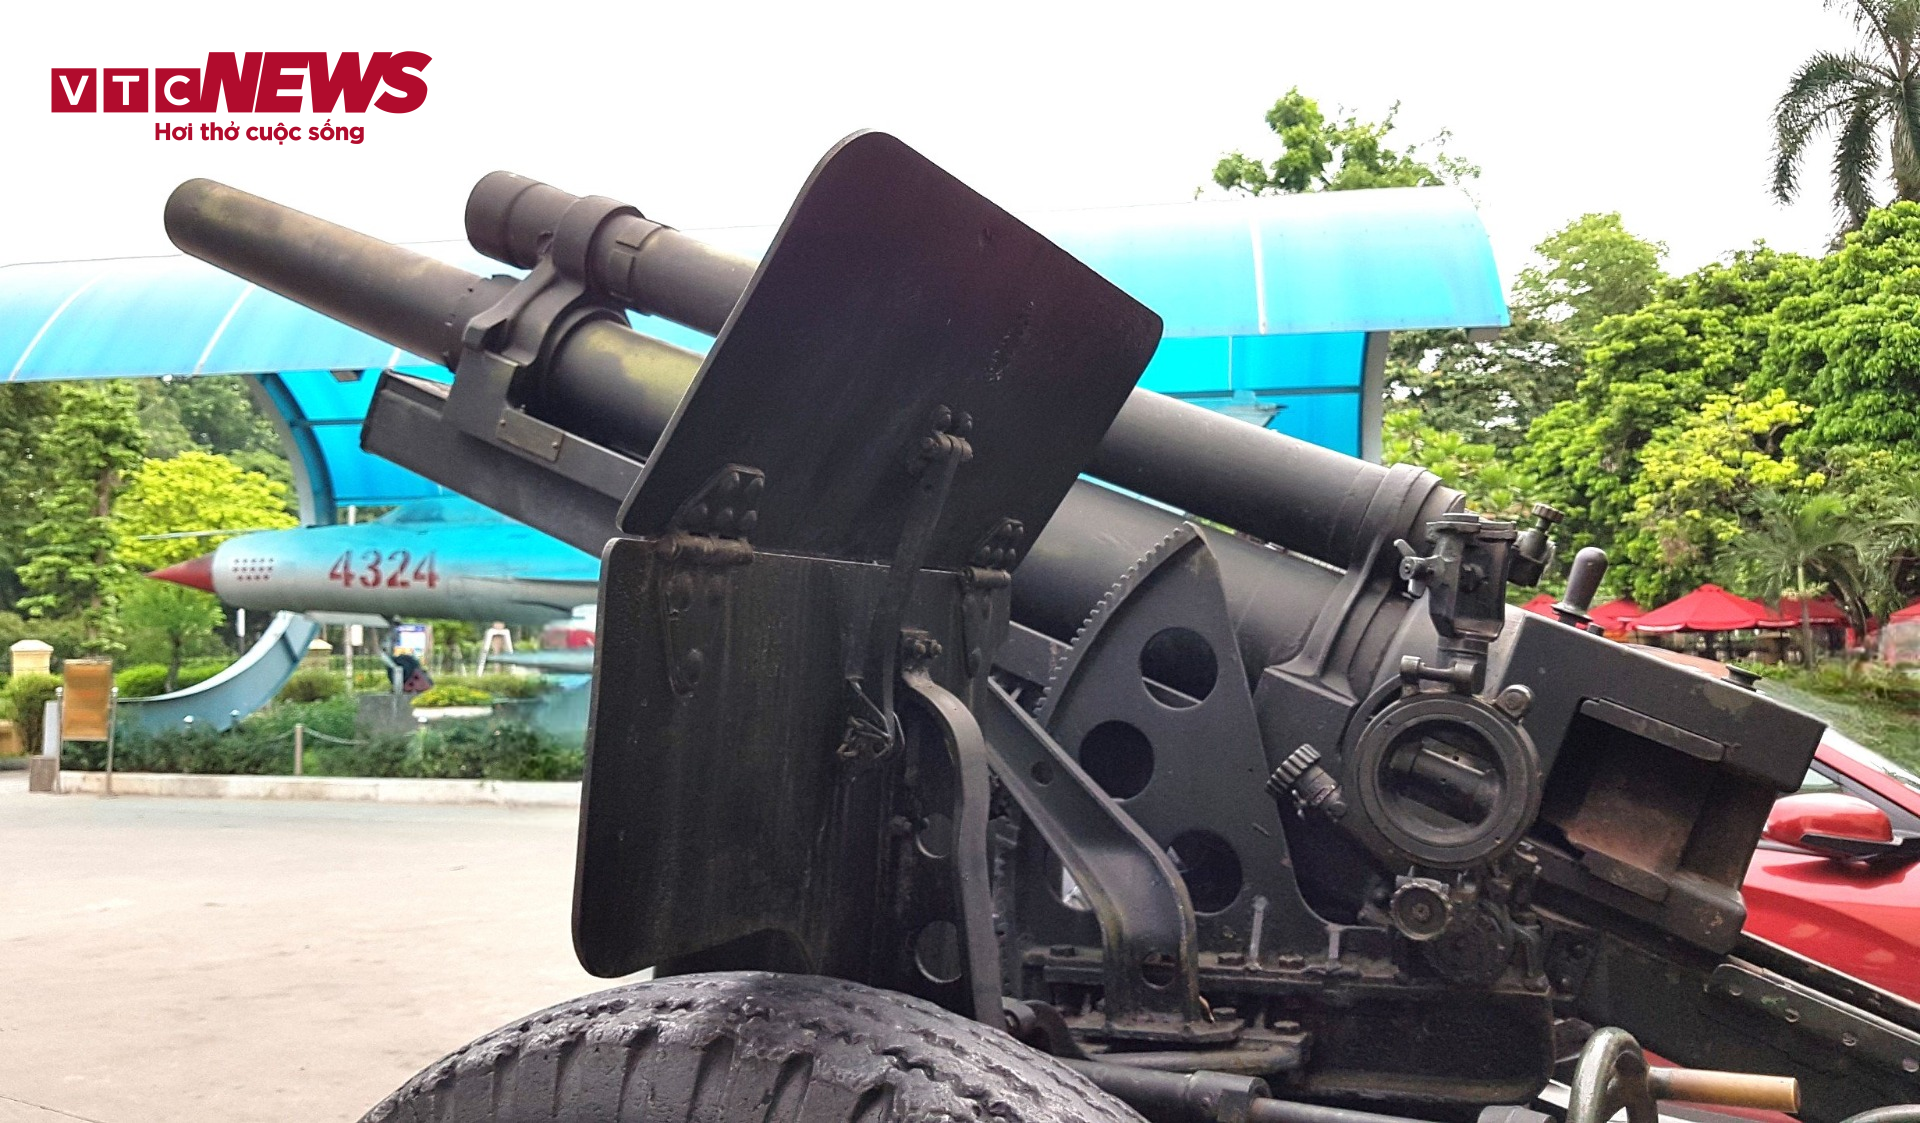 Những khẩu pháo giúp chiến sĩ Điện Biên làm nên chiến thắng 'chấn động địa cầu' - 3